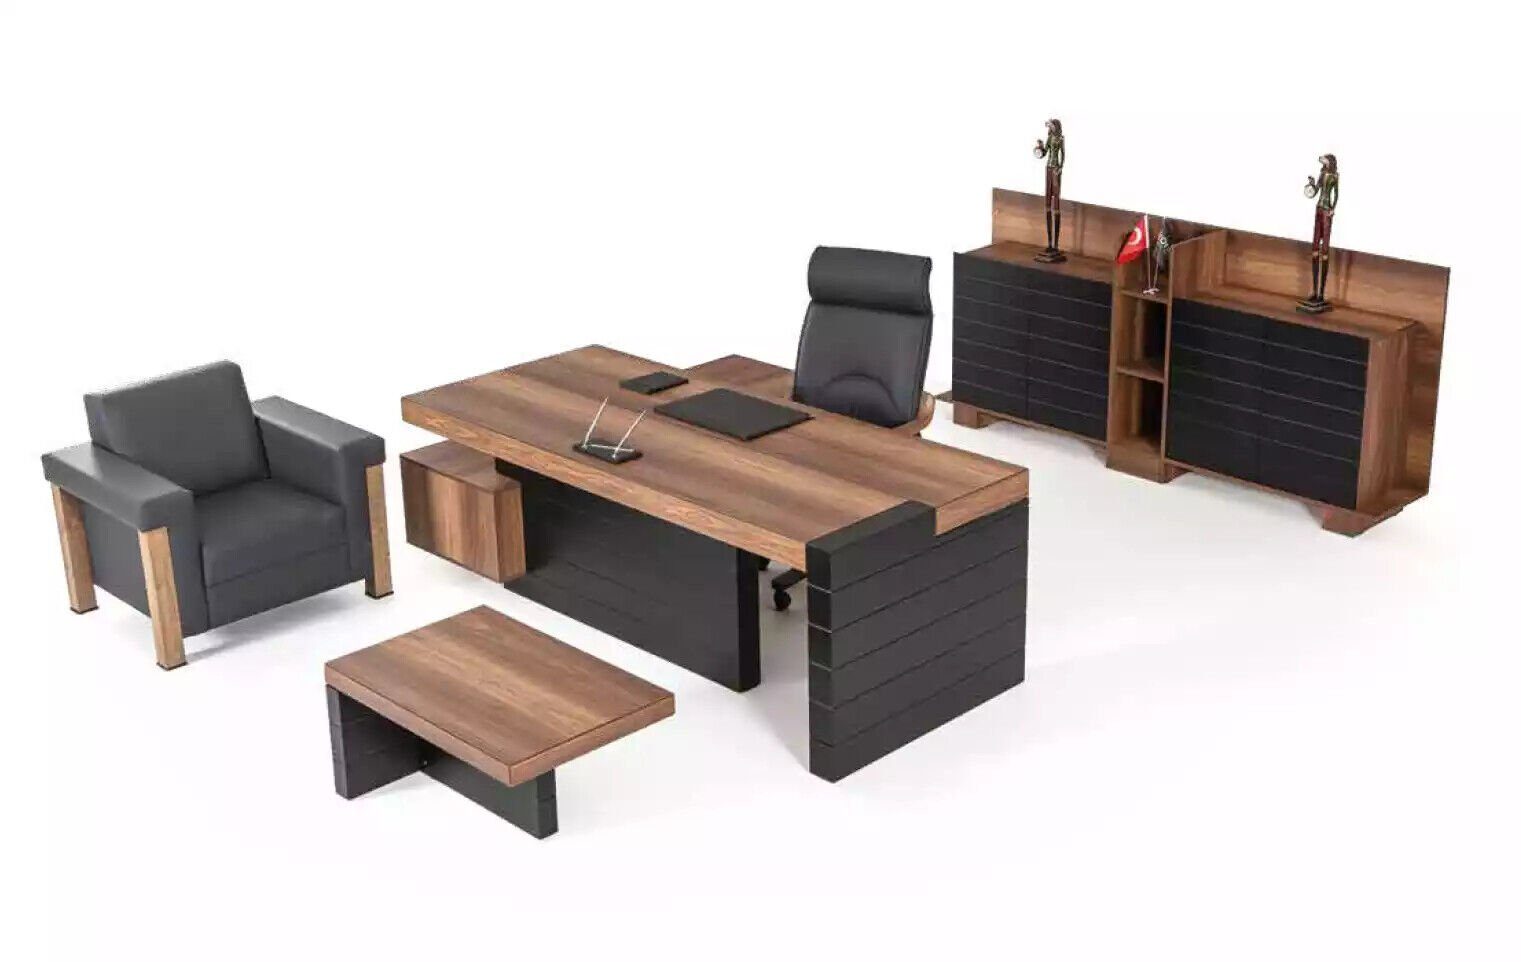 JVmoebel Büromöbel Office Designer, Europe Made Eckschreibtisch 240cm In Eckschreibtisch Tisch Möbel